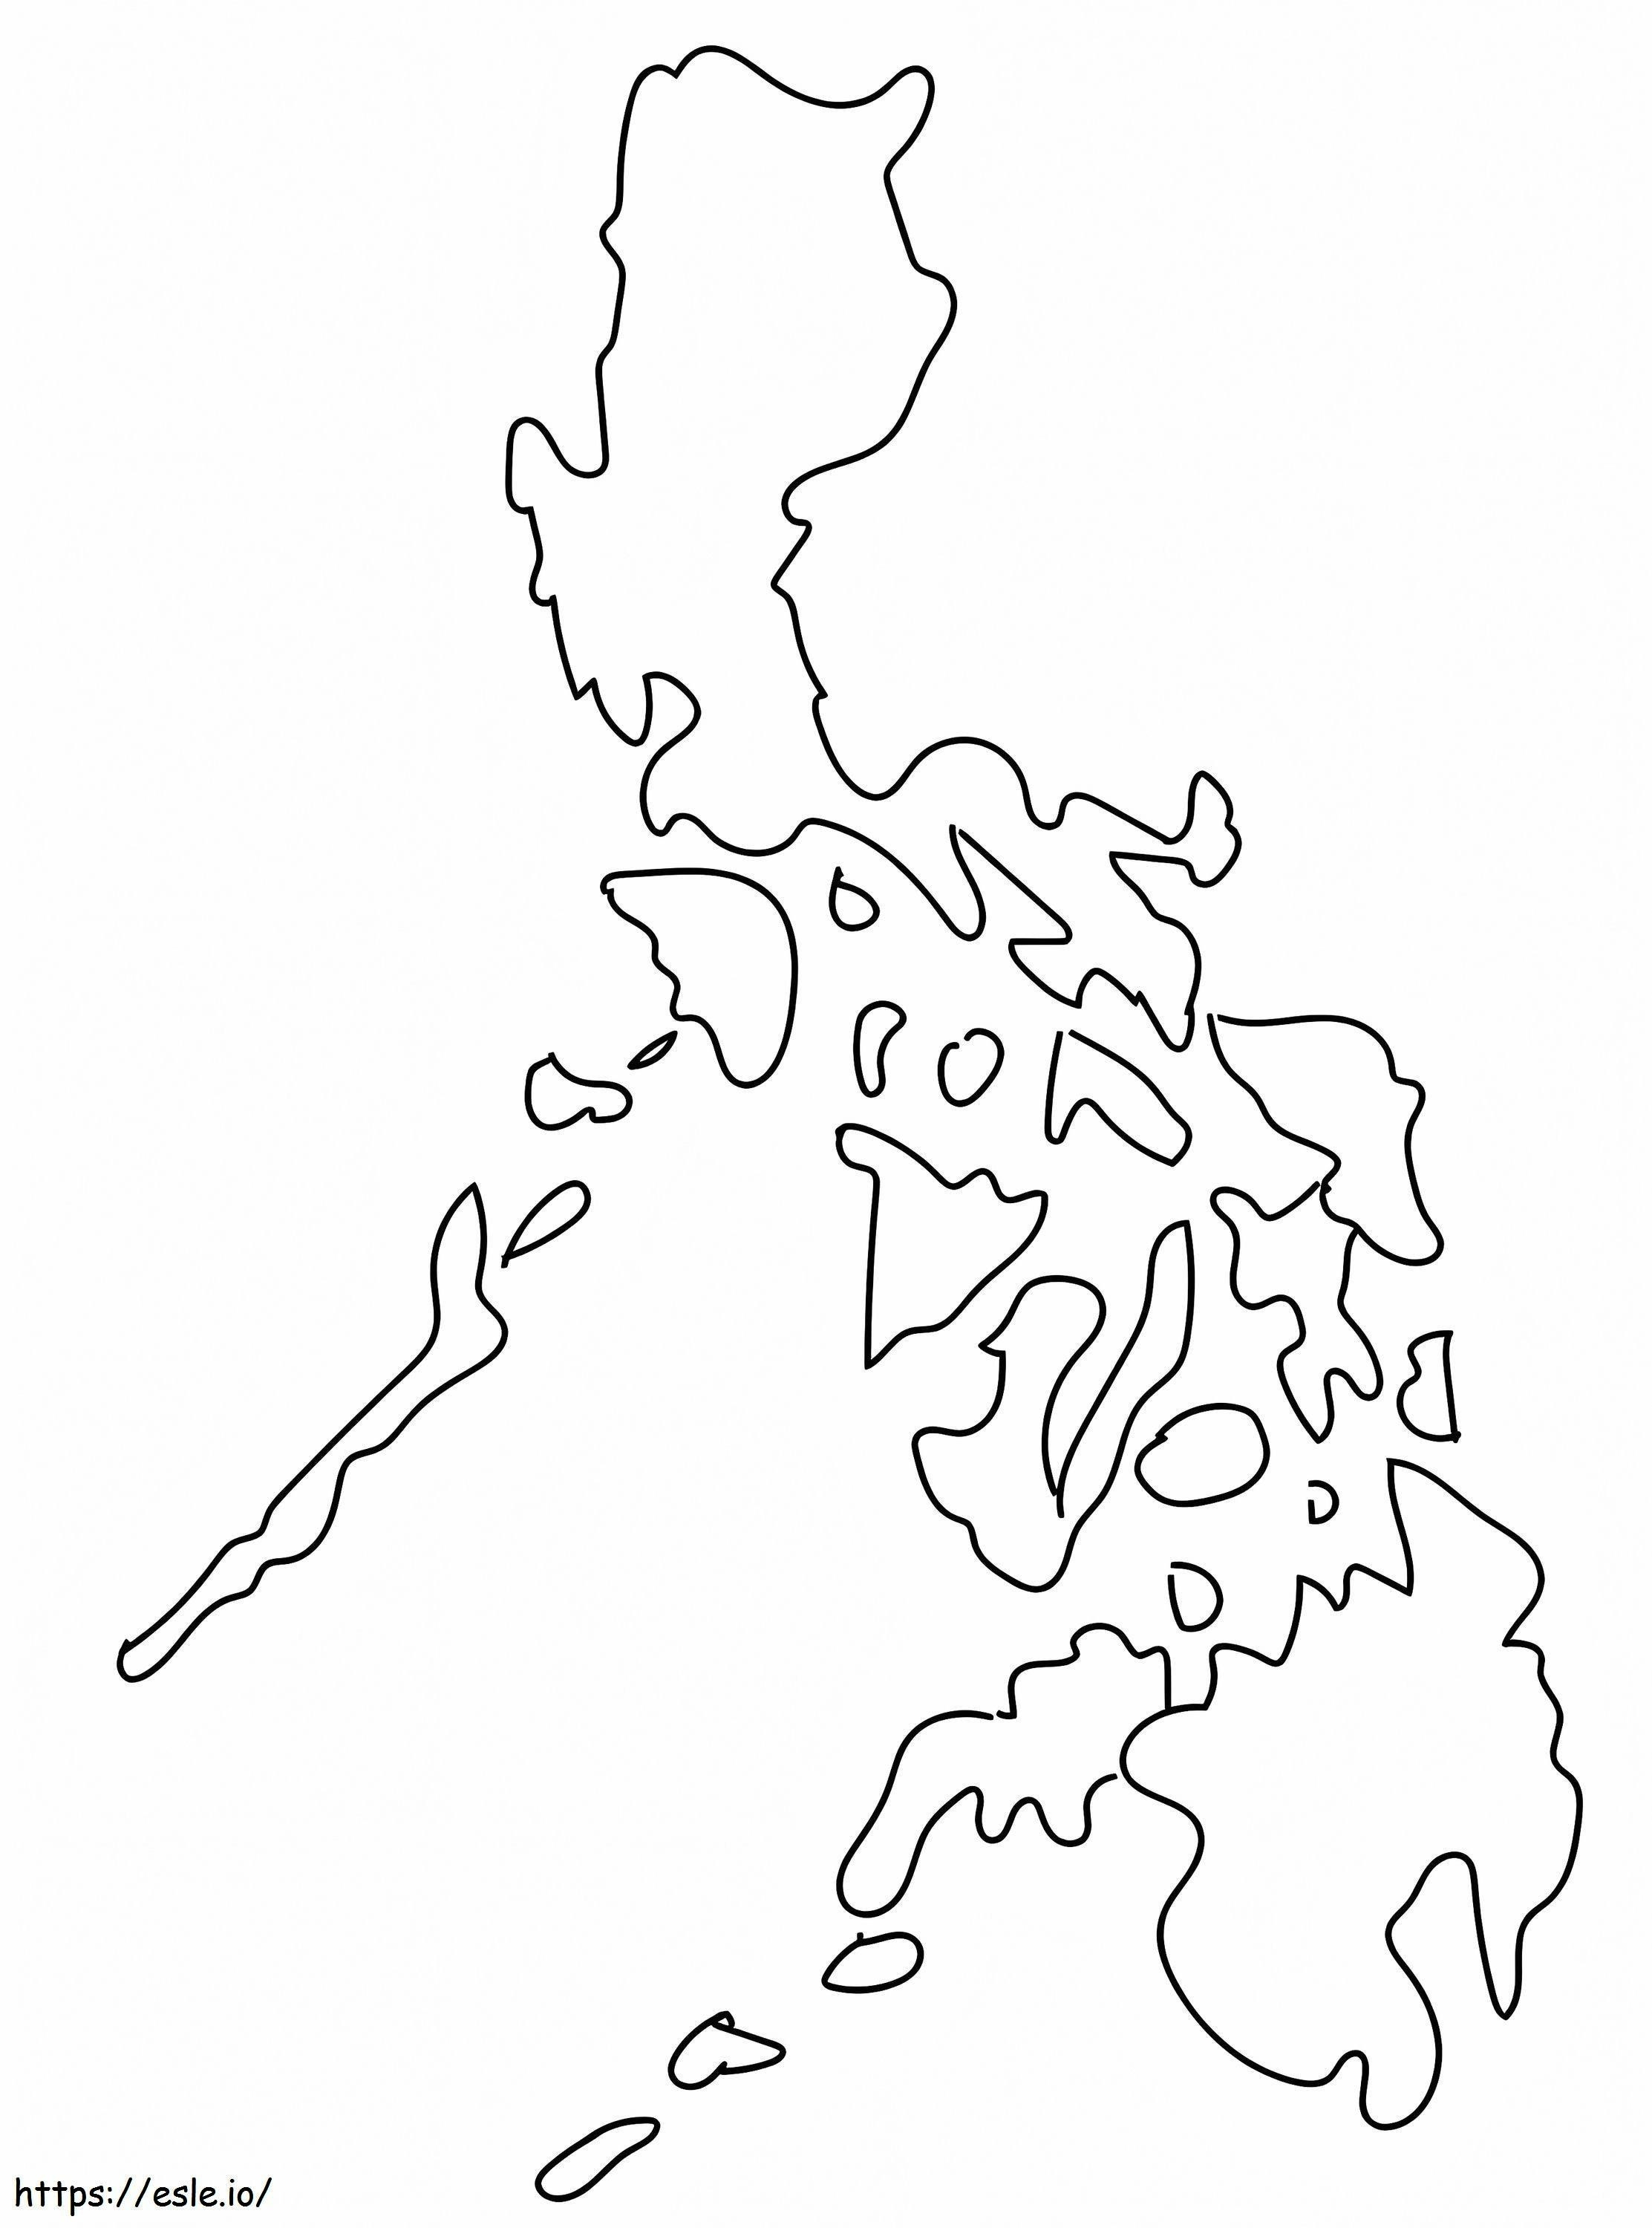 Karte der Philippinen ausmalbilder